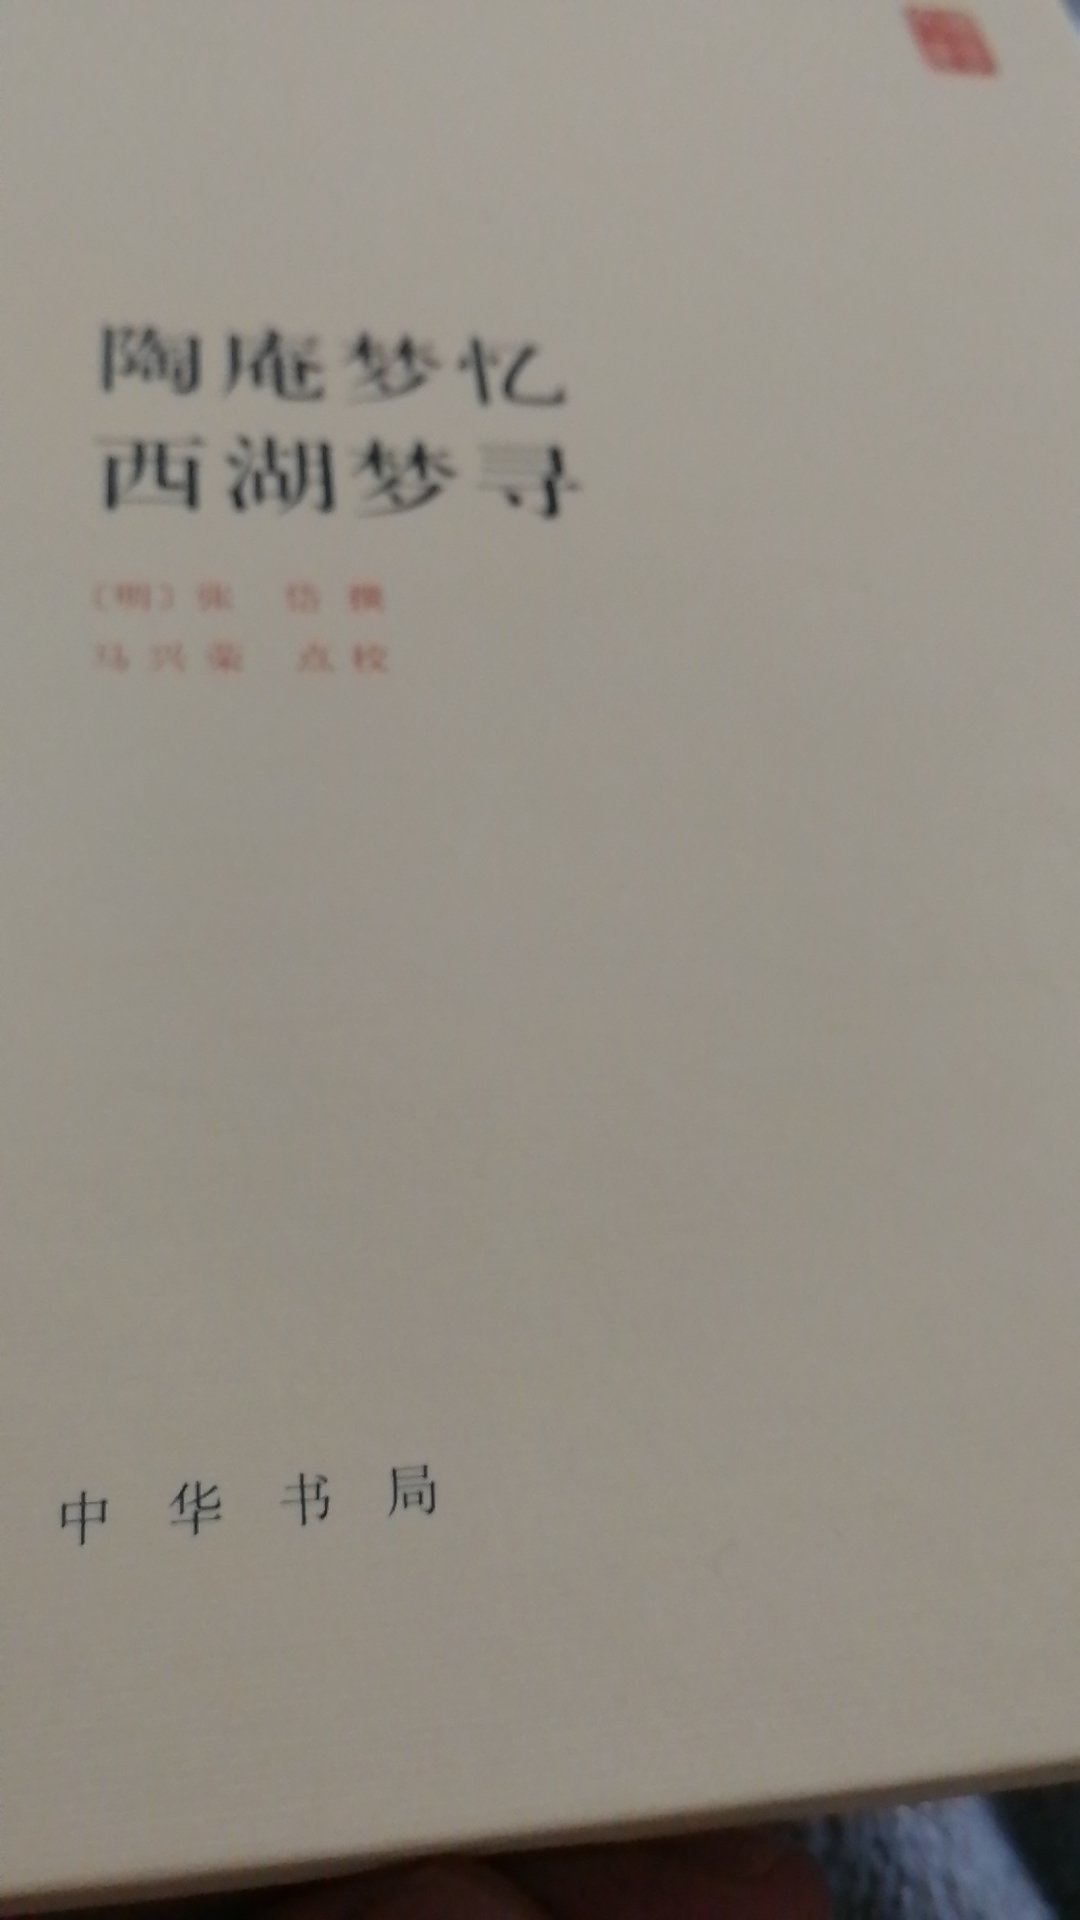 中华书局的书，权威性没的说，但是注意了，这个版本没有注释，是纯原文翻译的，没有文言文功底的读起来可能稍微费劲，但是原汁原味的品读，也是快事。